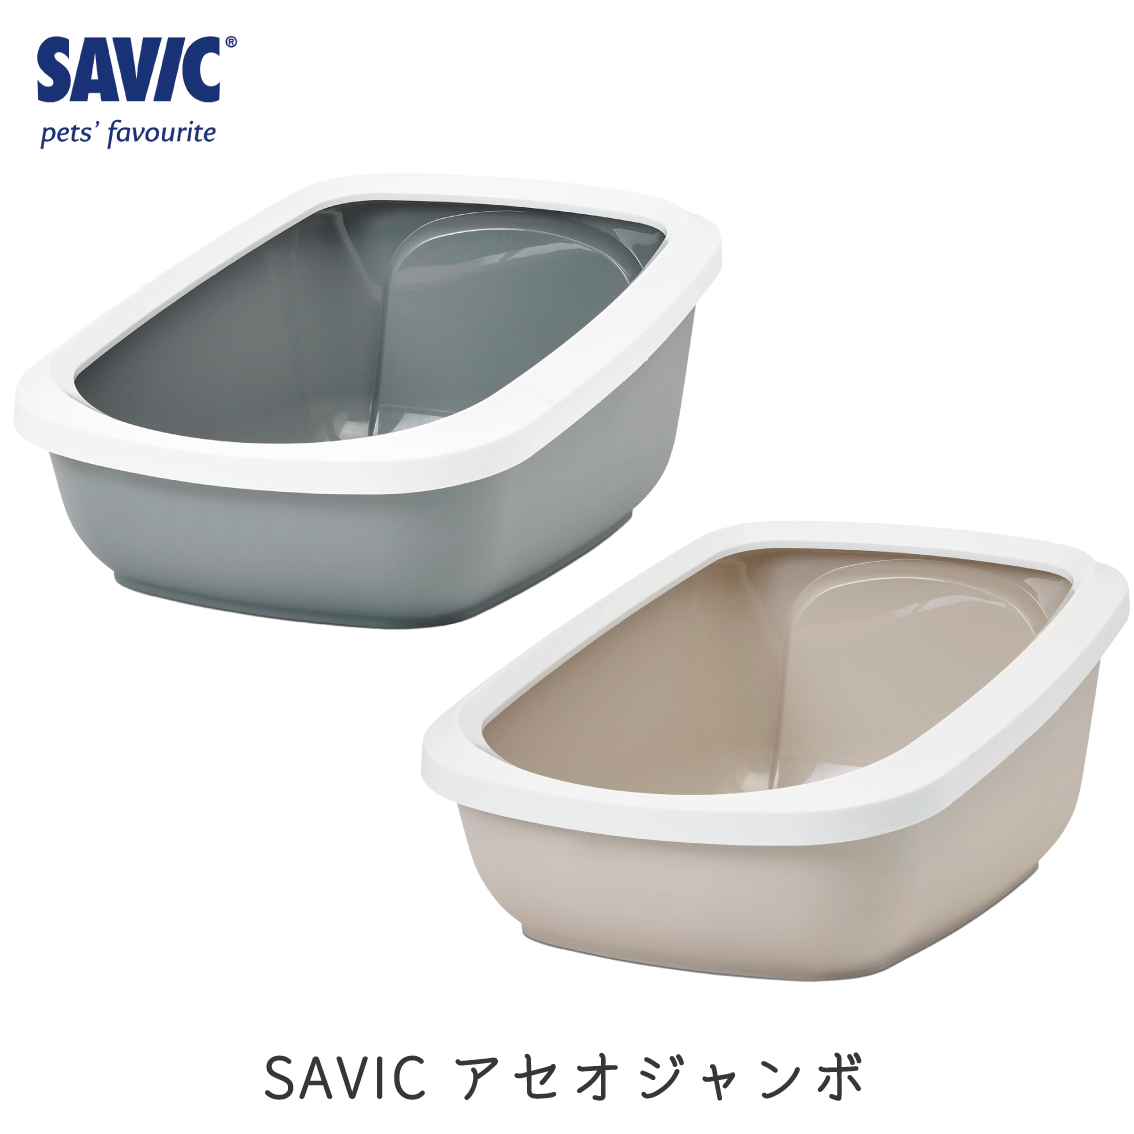 猫トイレ コンパクト 小型 小さめ おすすめ しつけ 洗いやすい 円型 トレー シンプル おしゃれ 送料無料 ネコトイレ SAVIC(セイヴィック) ギズモ M